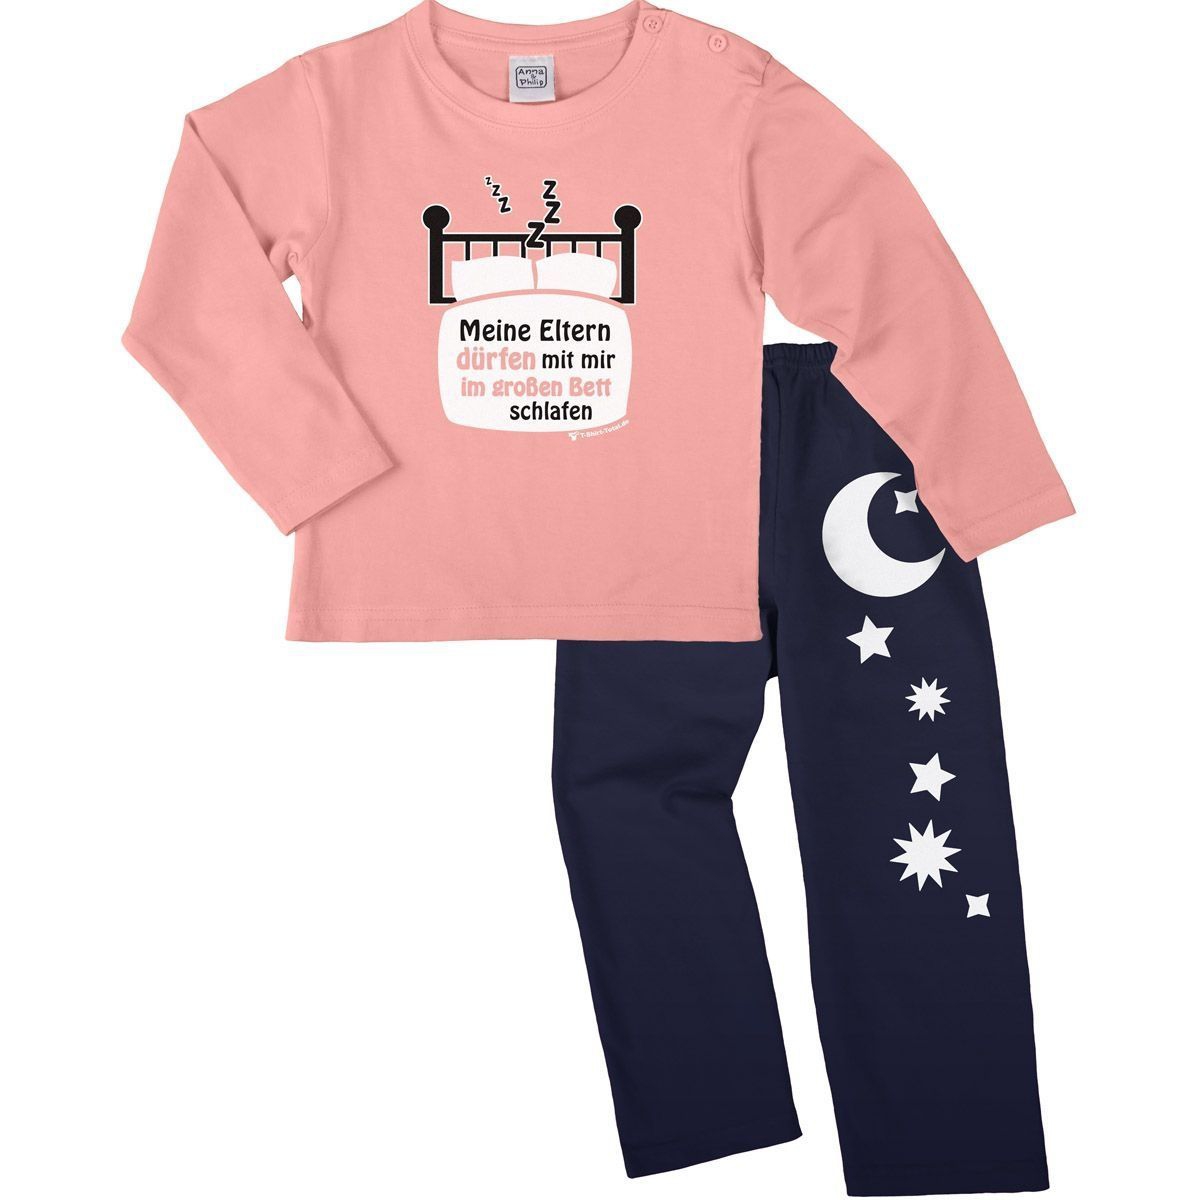 Im großen Bett schlafen Pyjama Set rosa / navy 110 / 116